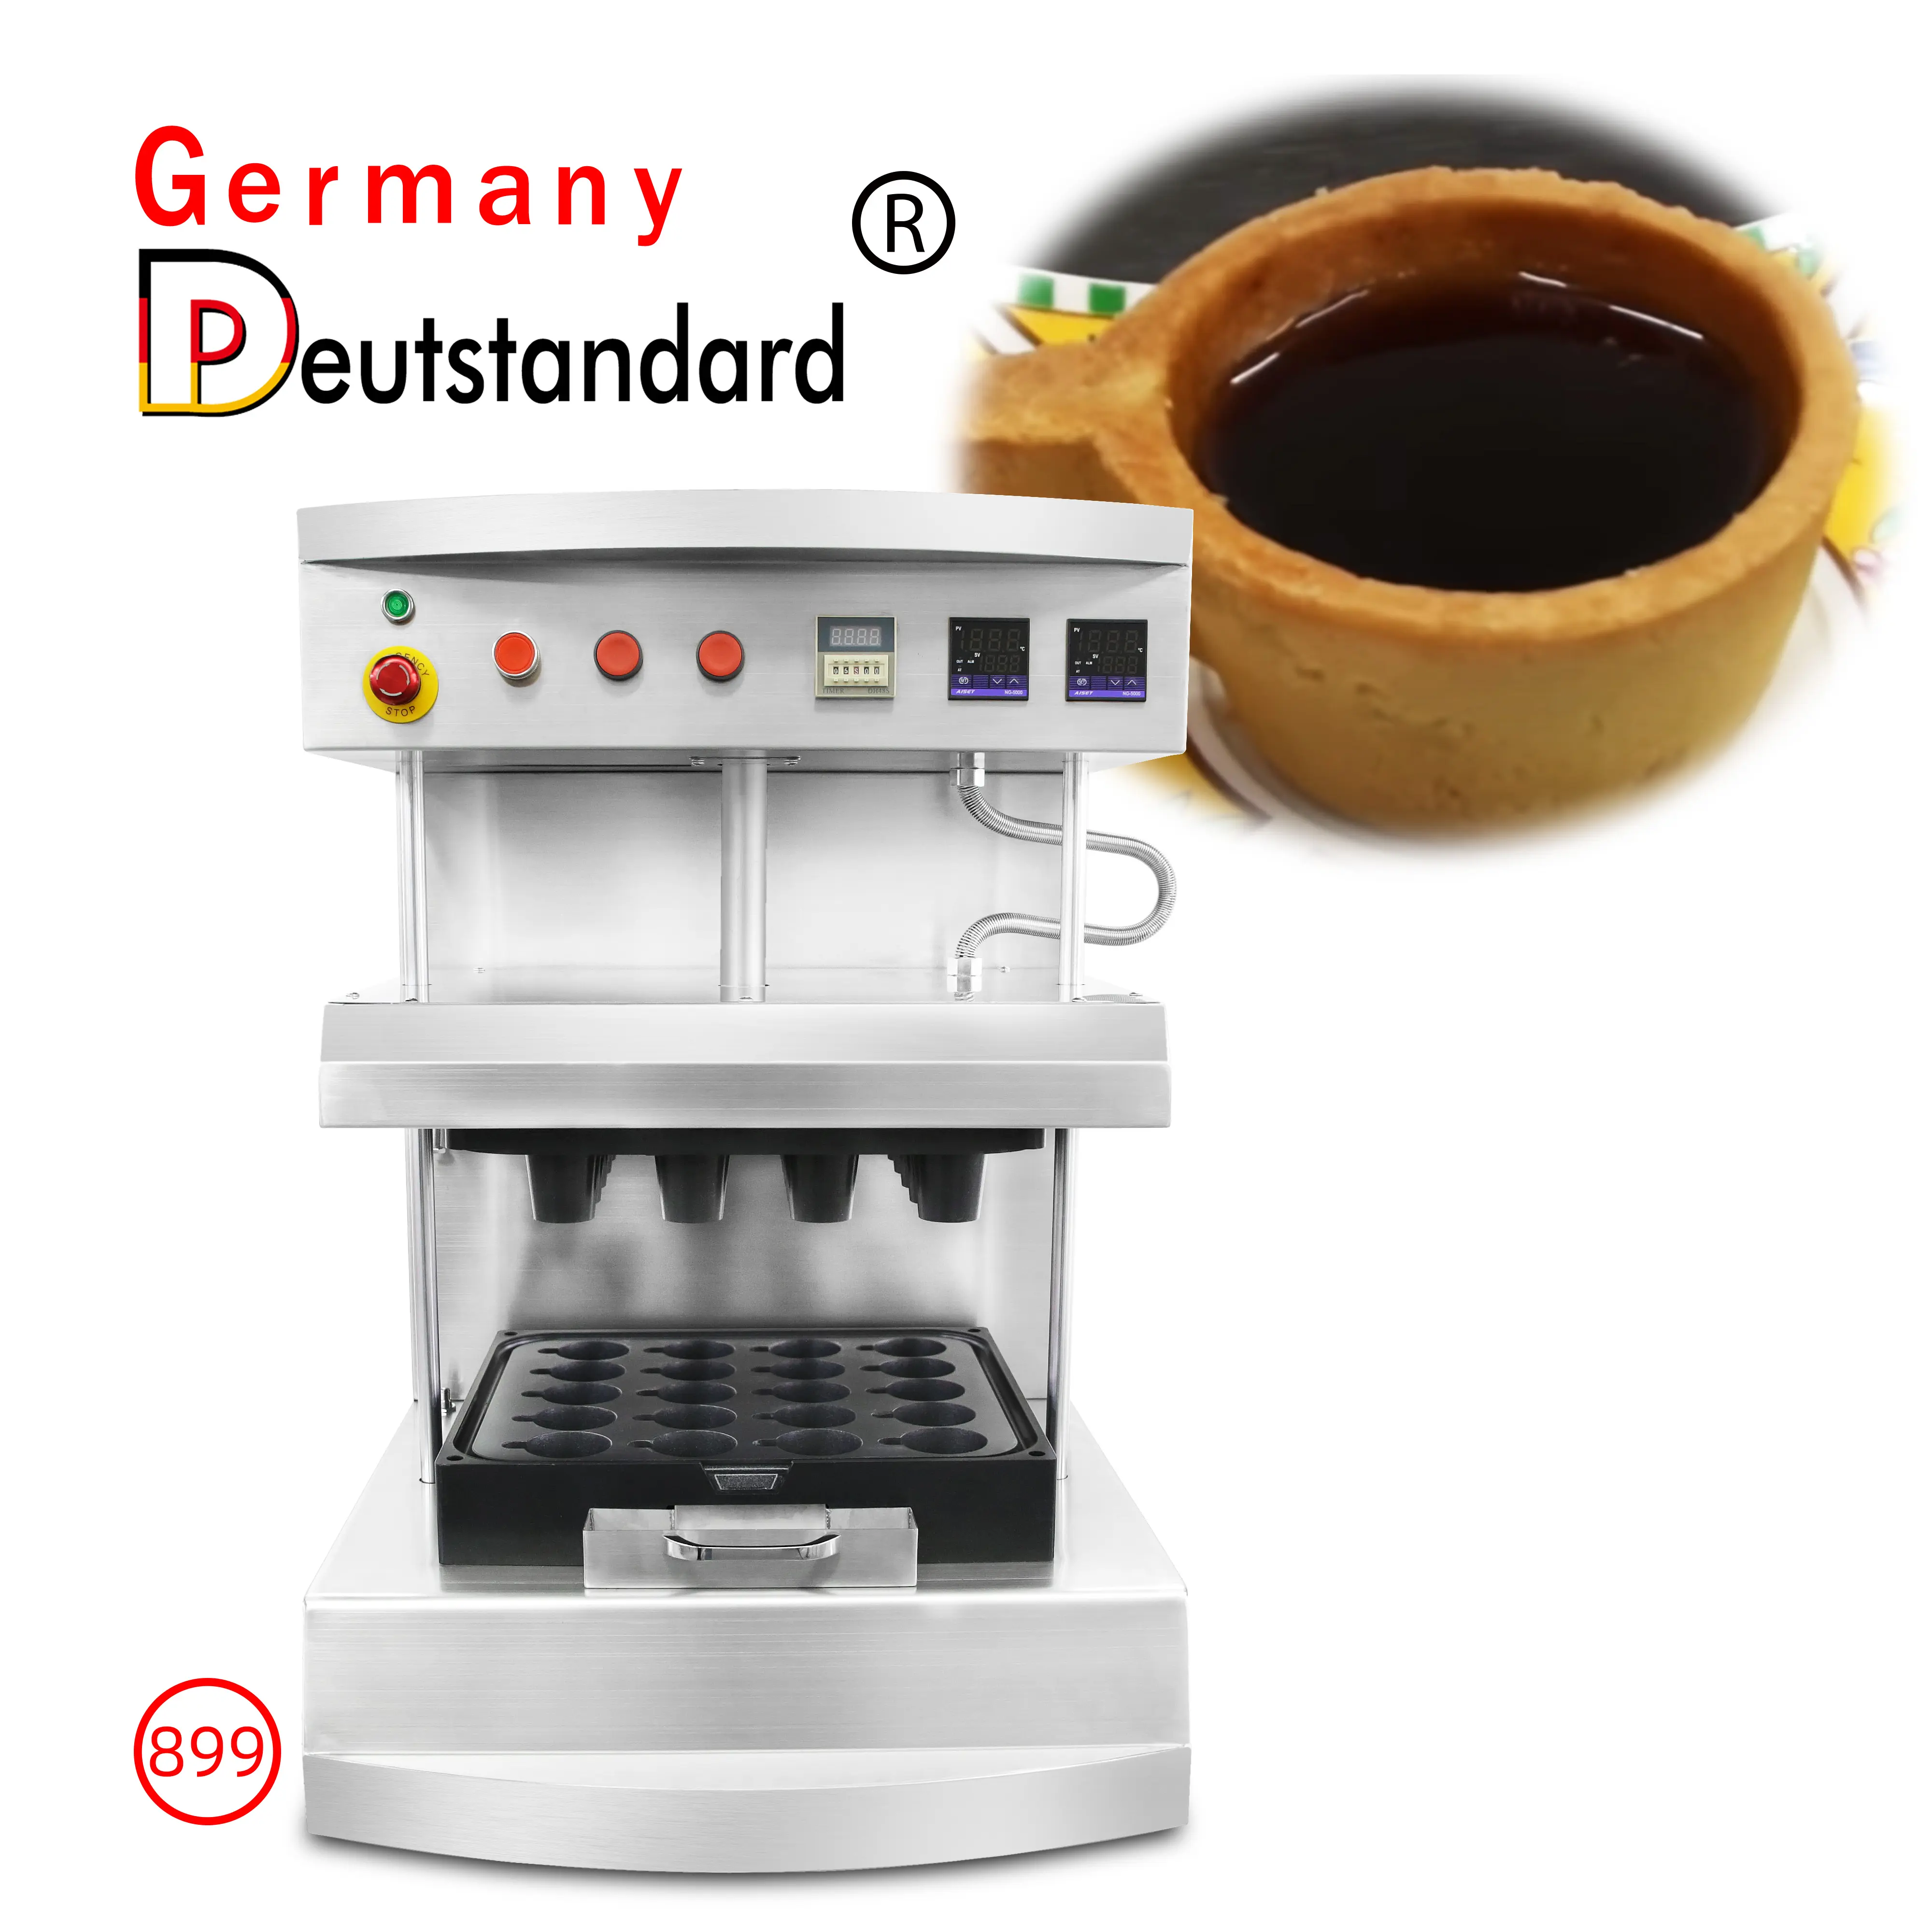 Đức deutstandard NP-899 cup 20 lỗ Tart Shell Maker bán tự động trứng tart làm ăn được Tart cup máy